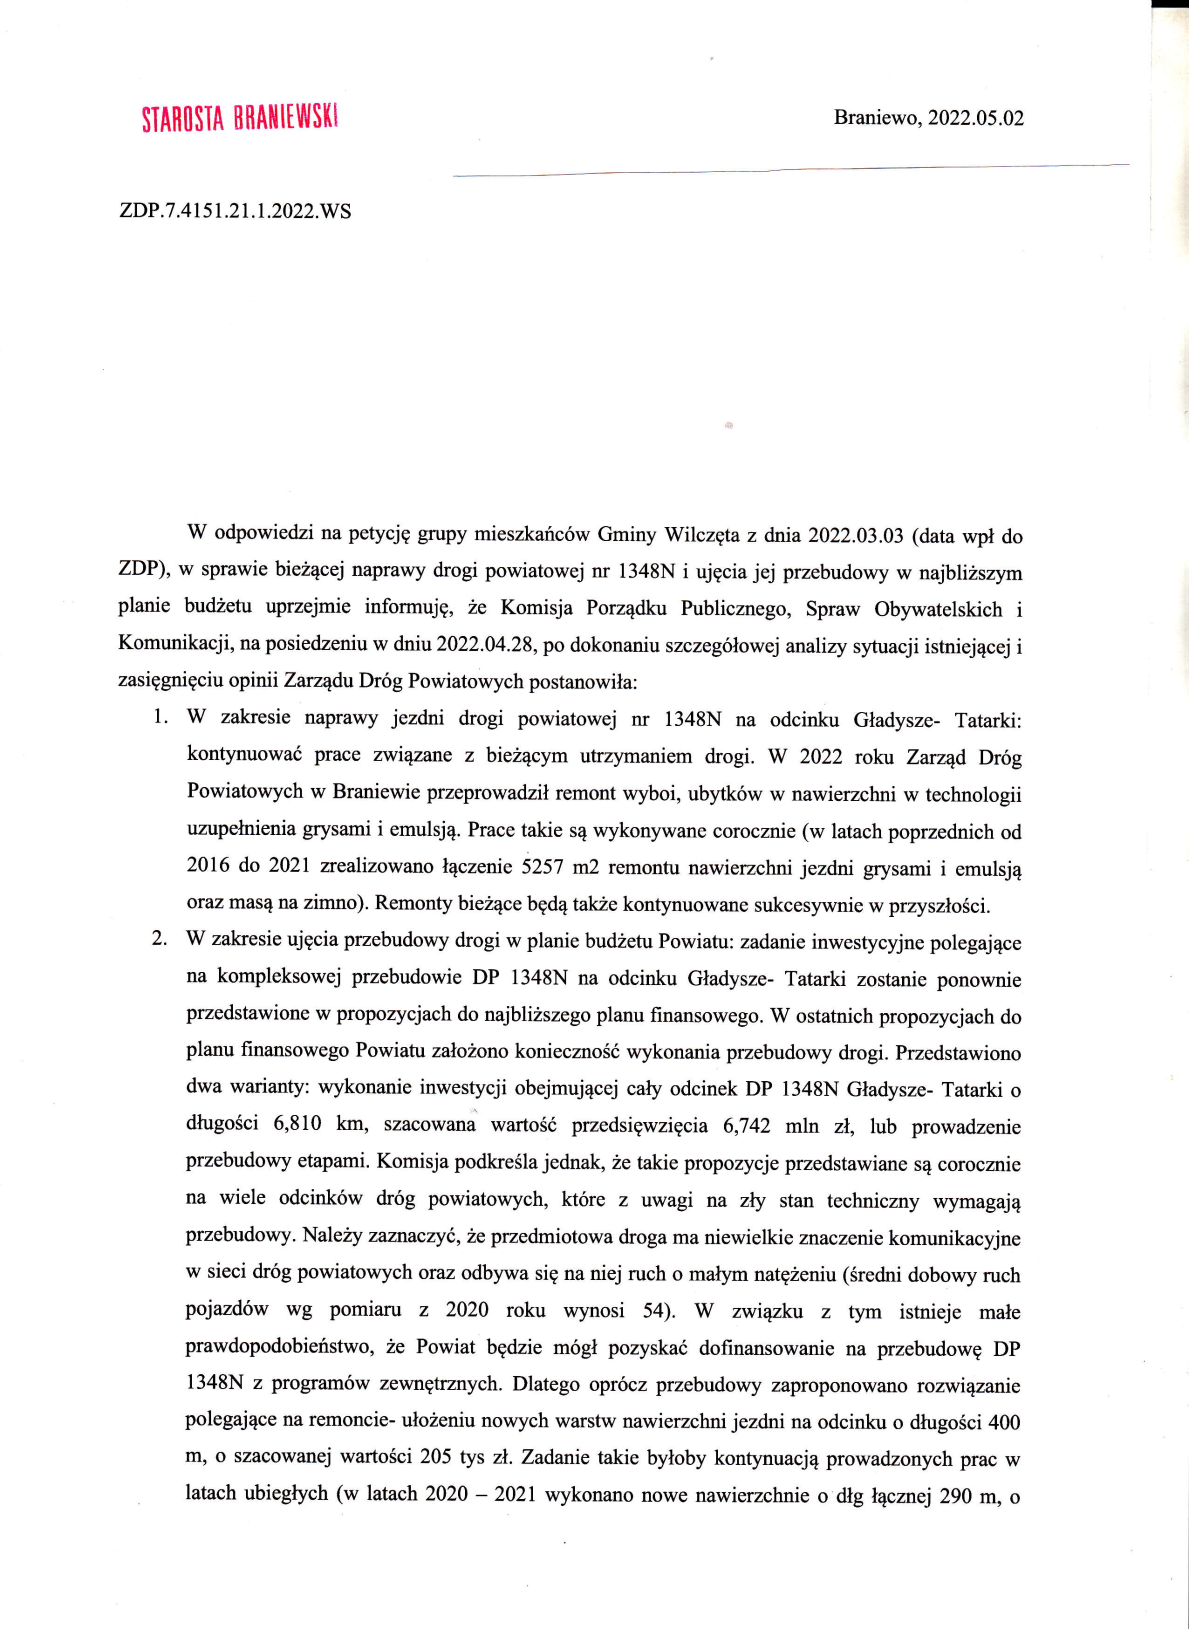 Petycja DP 1348N Gładysze - Tatarki 